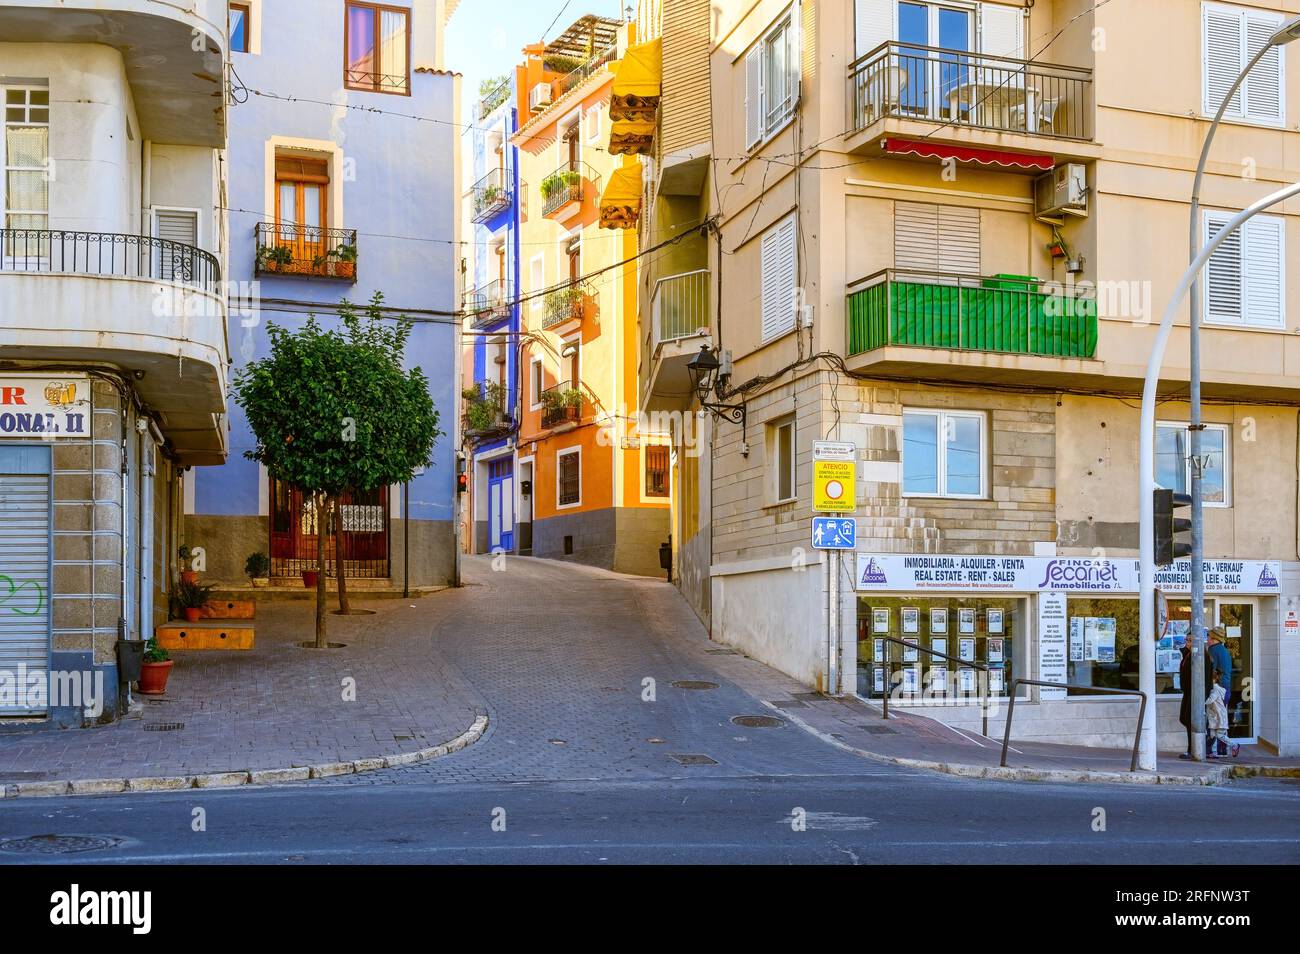 Villajoyosa, Espagne, Architecture de bâtiments dans un quartier résidentiel. Les structures sont divisées par une ruelle étroite ou une rue de la ville. Banque D'Images